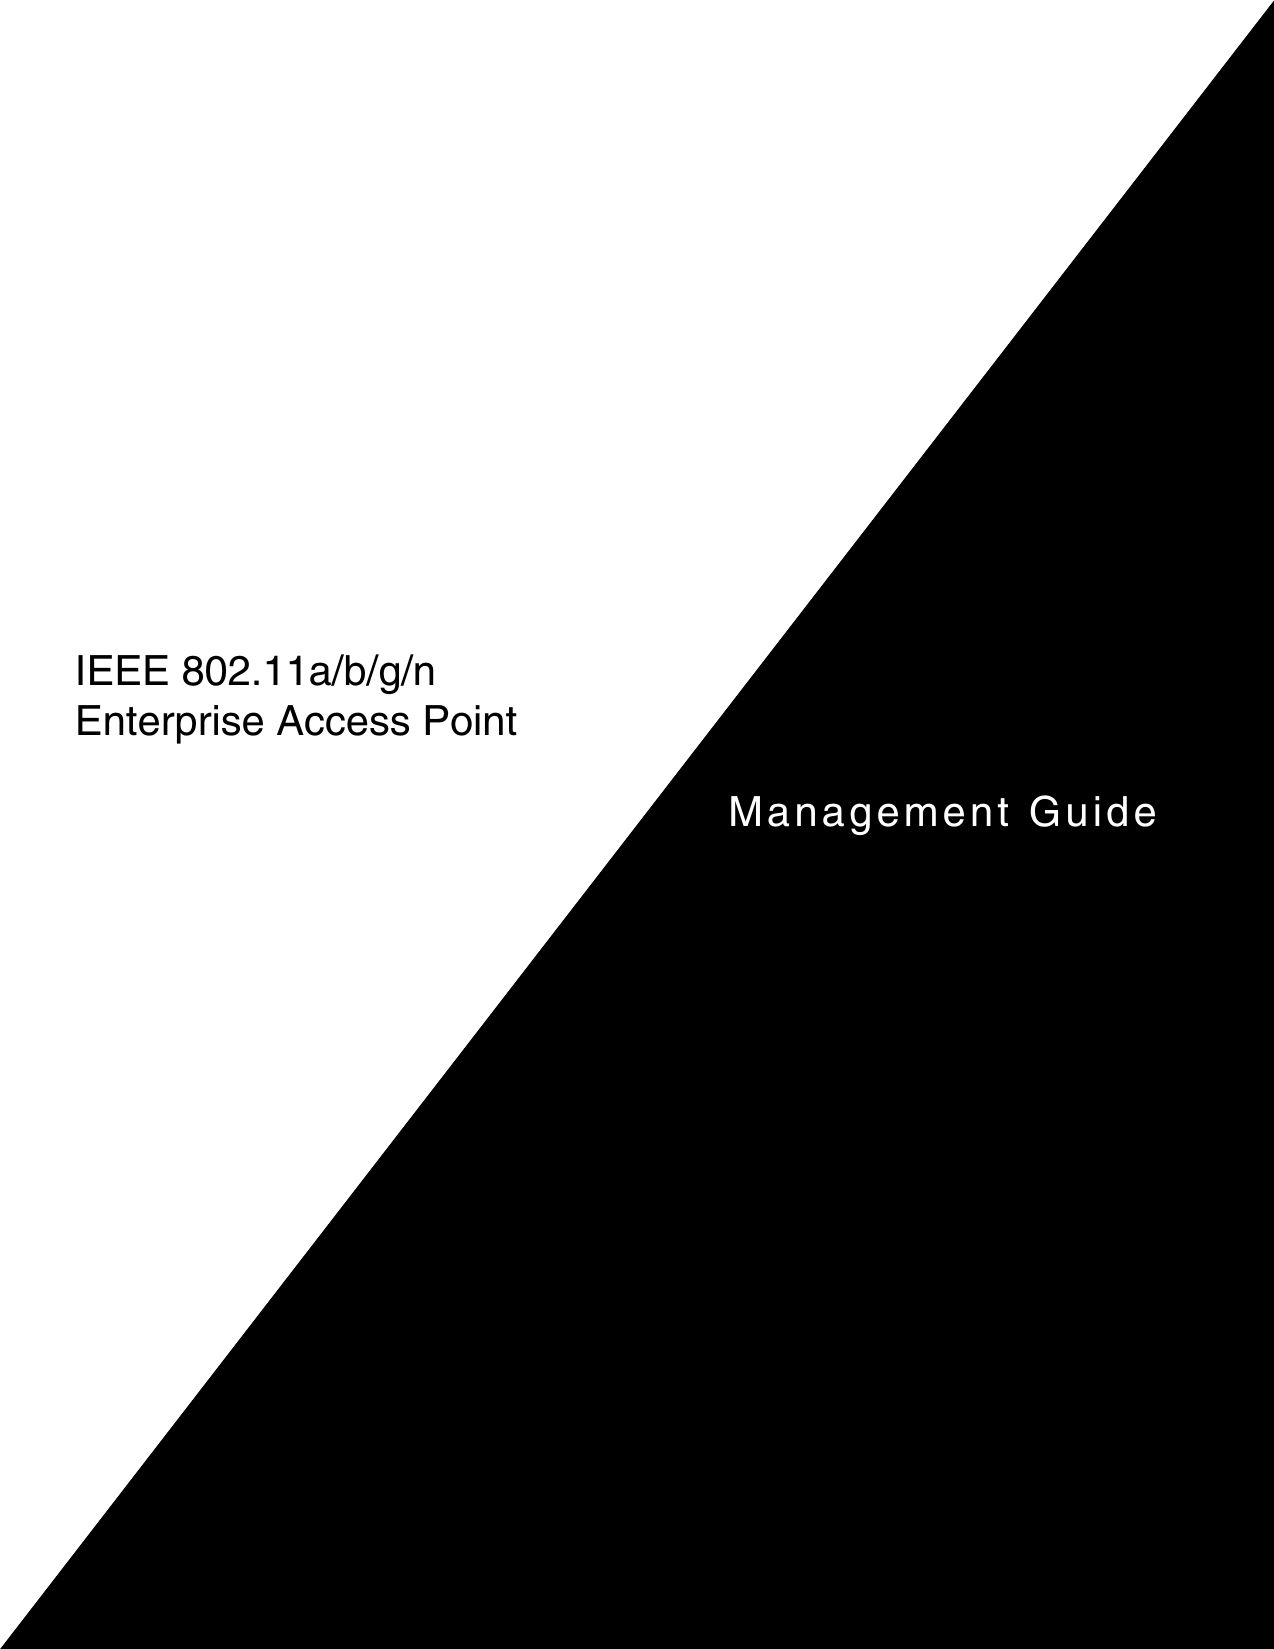 Management GuideIEEE 802.11a/b/g/n Enterprise Access Point